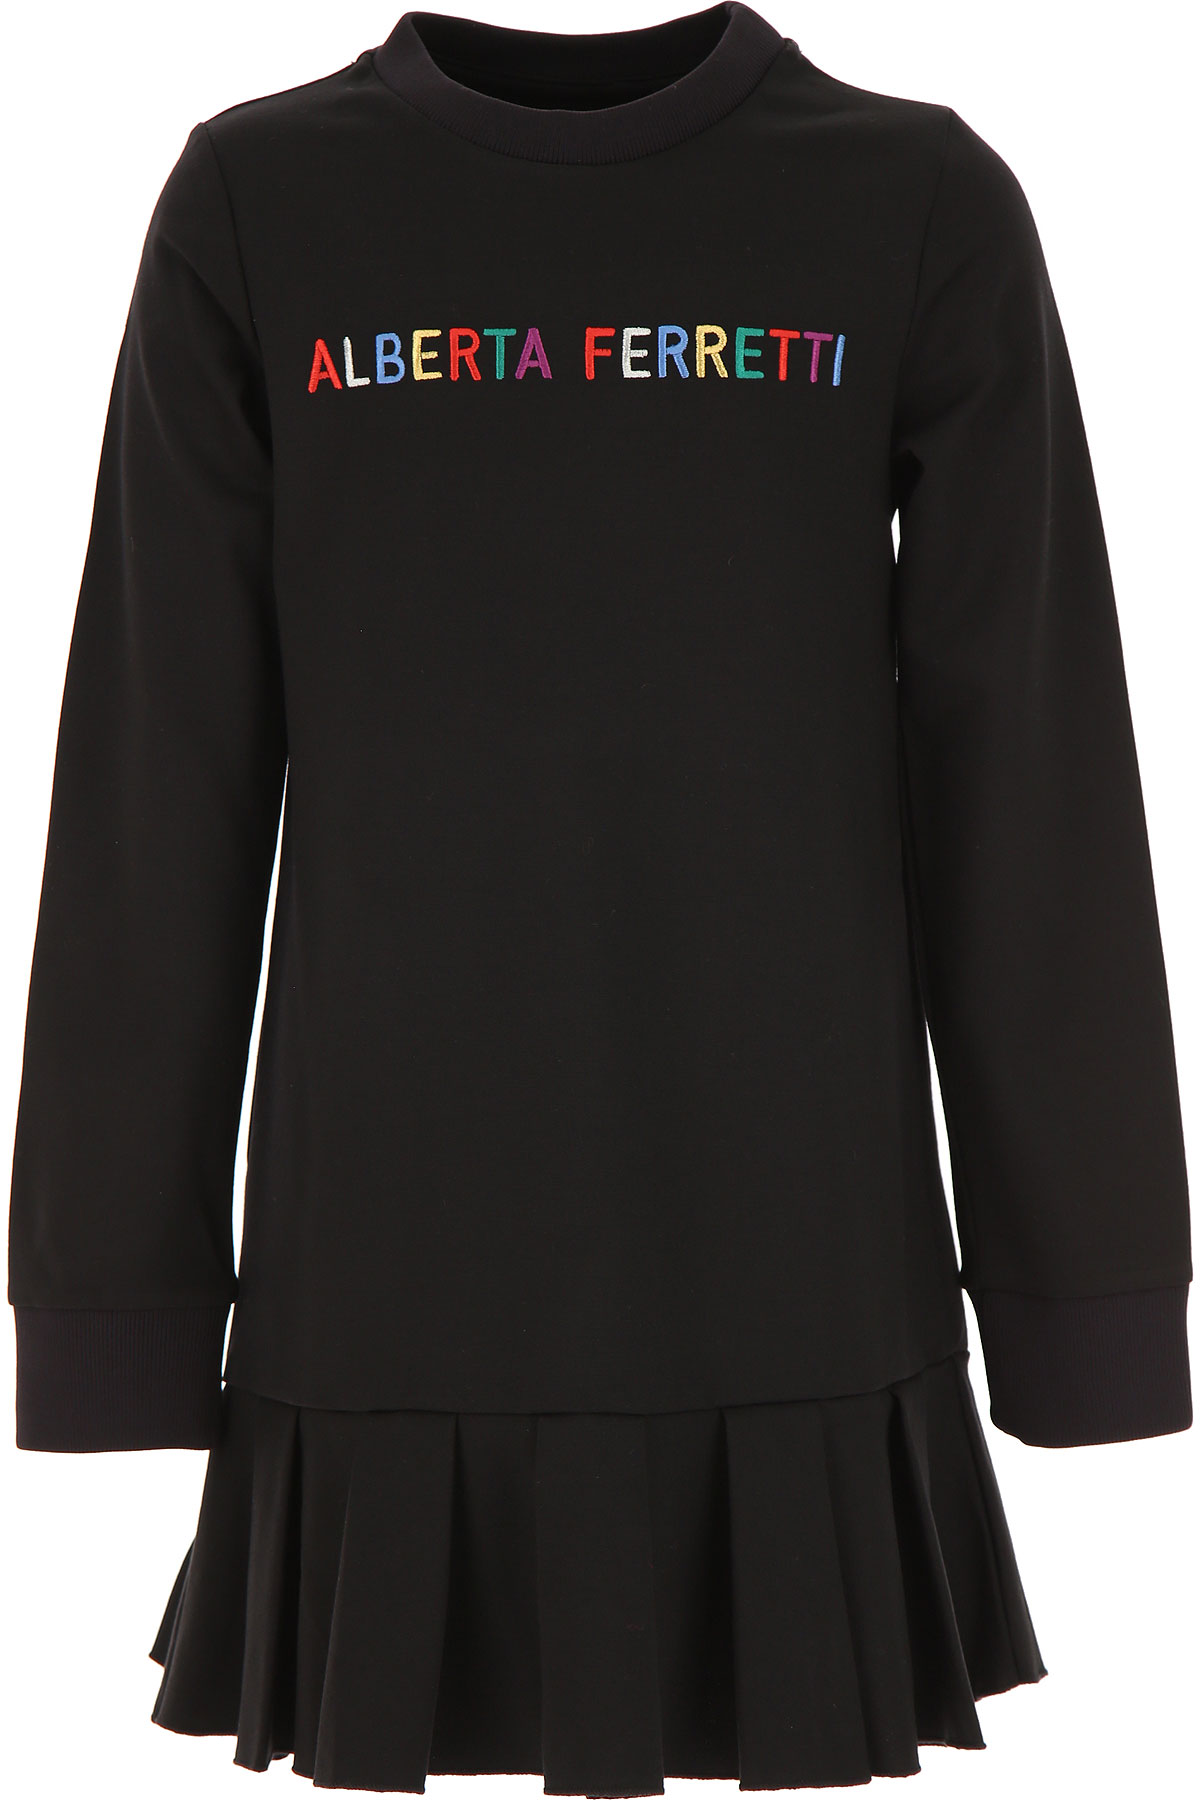 Alberta Ferretti Kleid für Mädchen Günstig im Sale, Schwarz, Viskose, 2017, 10Y 12Y 14Y 4Y 6Y 8Y